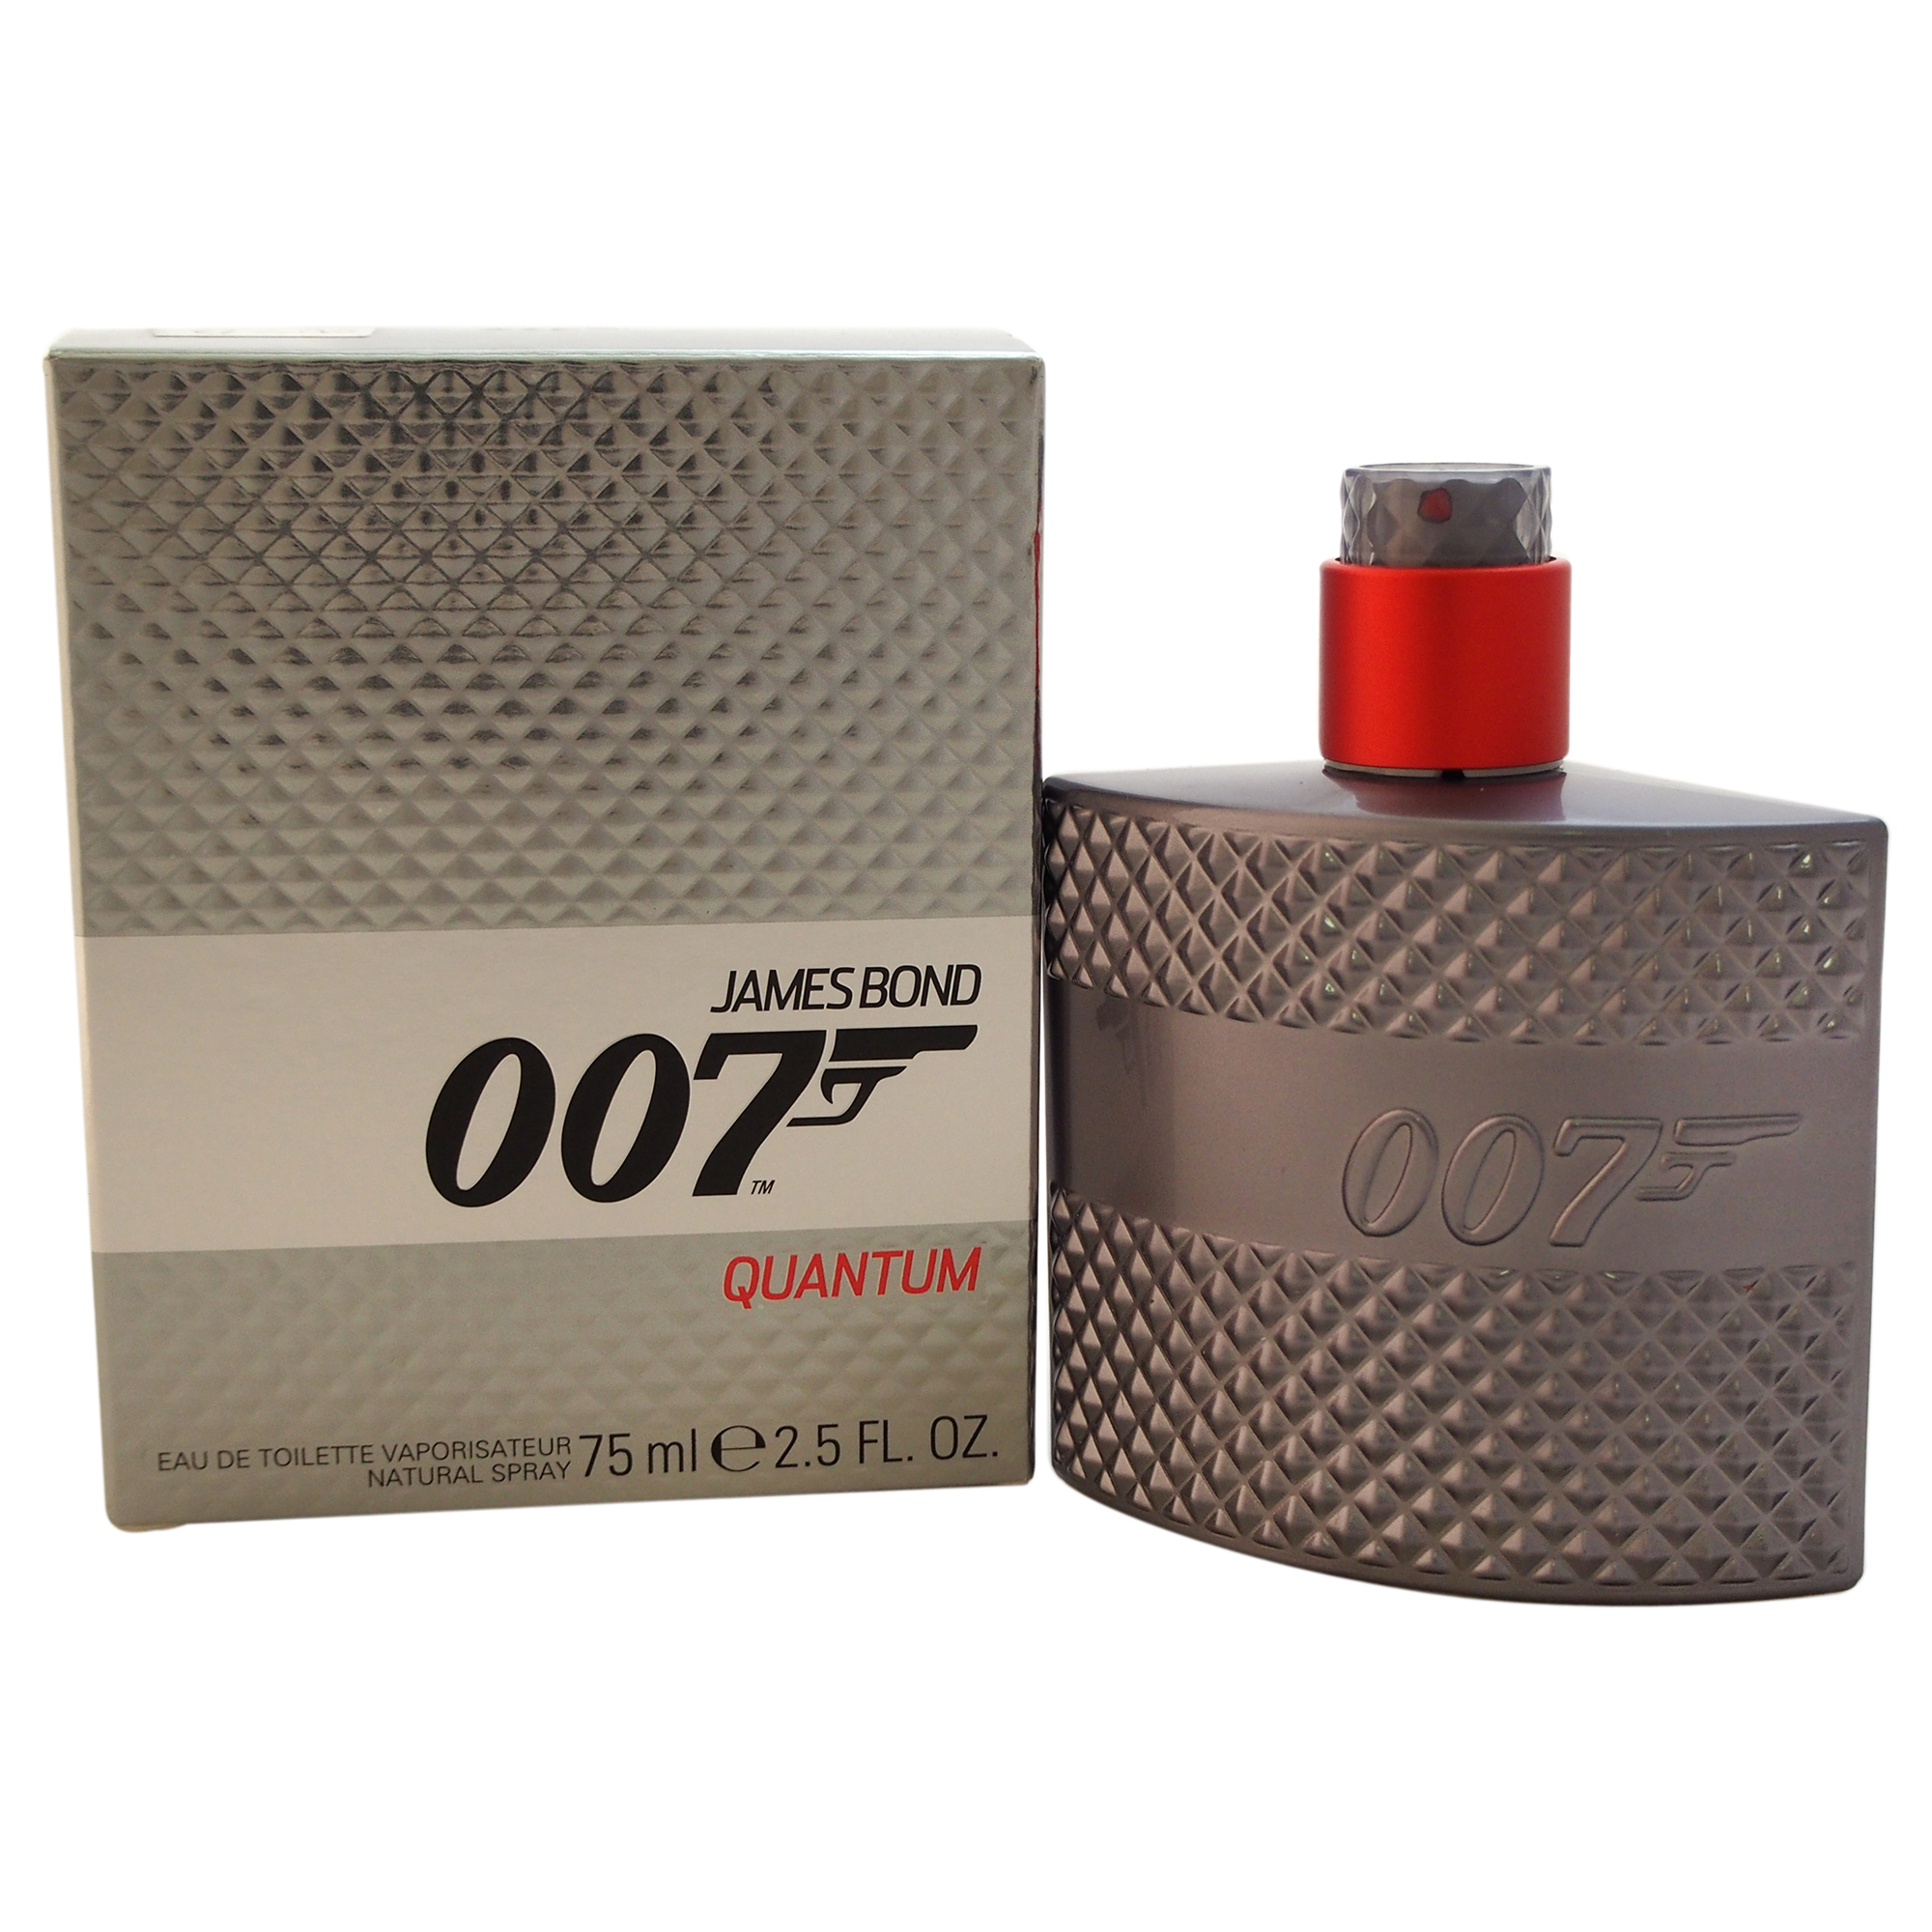 JAMES BOND 007 QUANTUM by James Bond for Men - 2.5 oz EDT Spray